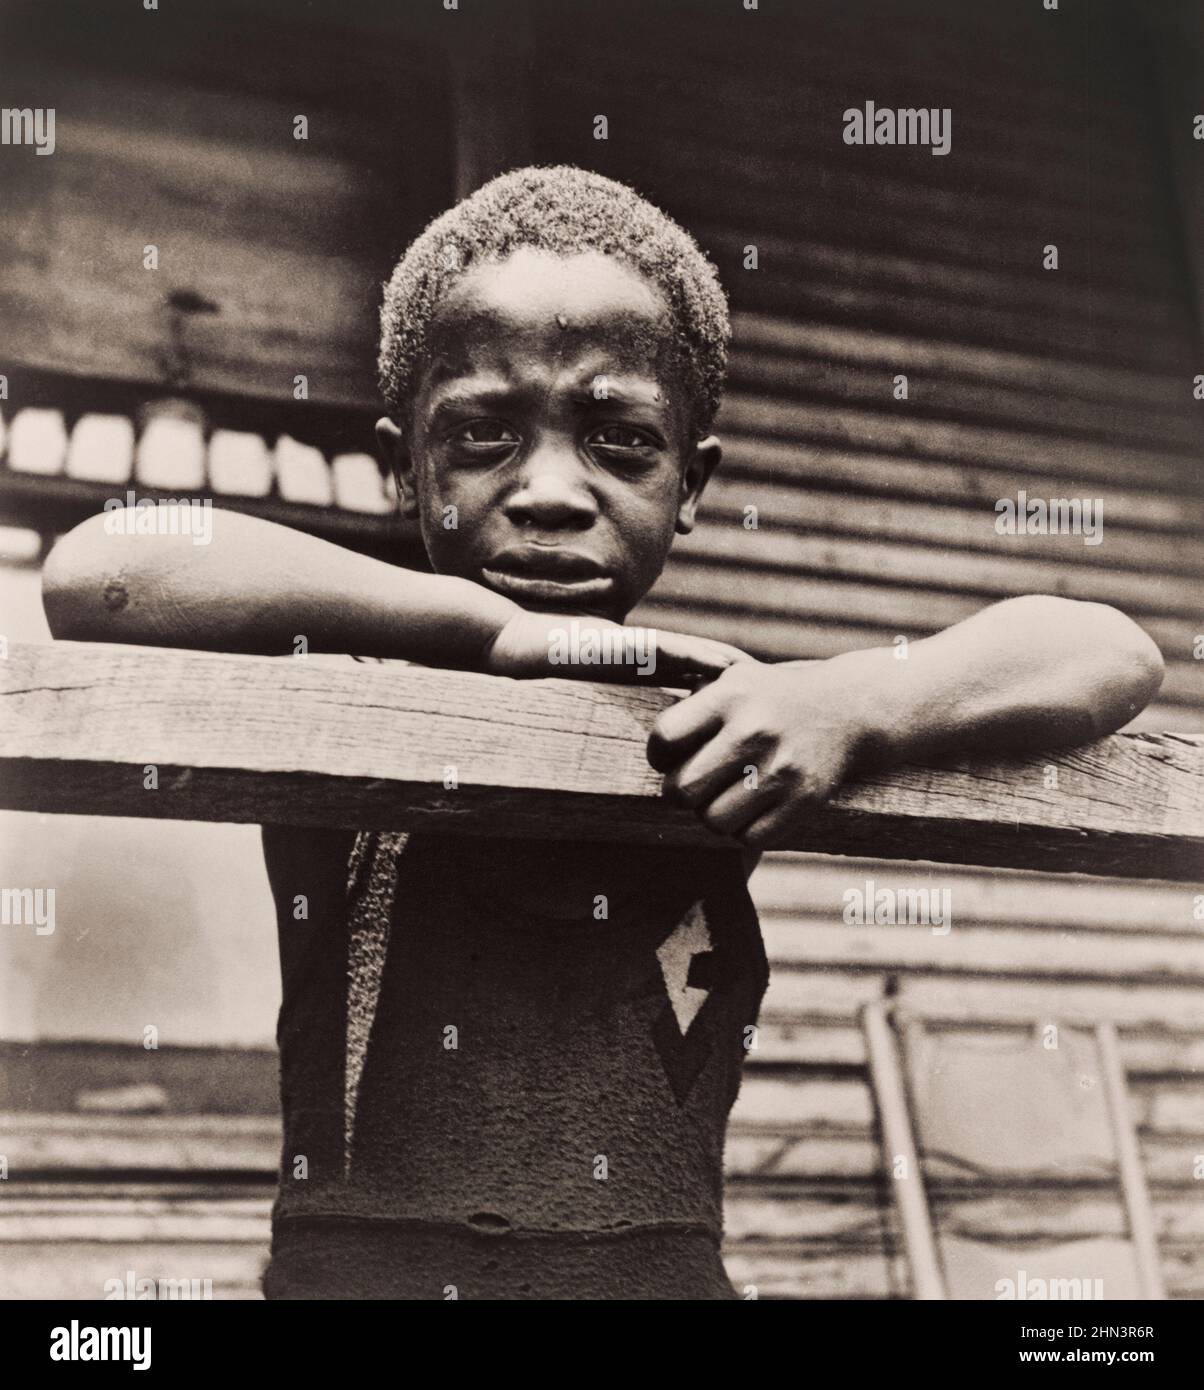 Vintage-Foto des Sohnes des afroamerikanischen Stahlarbeiters, Pittsburgh, 1935 von Marion Wolcott, 1910-1990, Fotografin Stockfoto